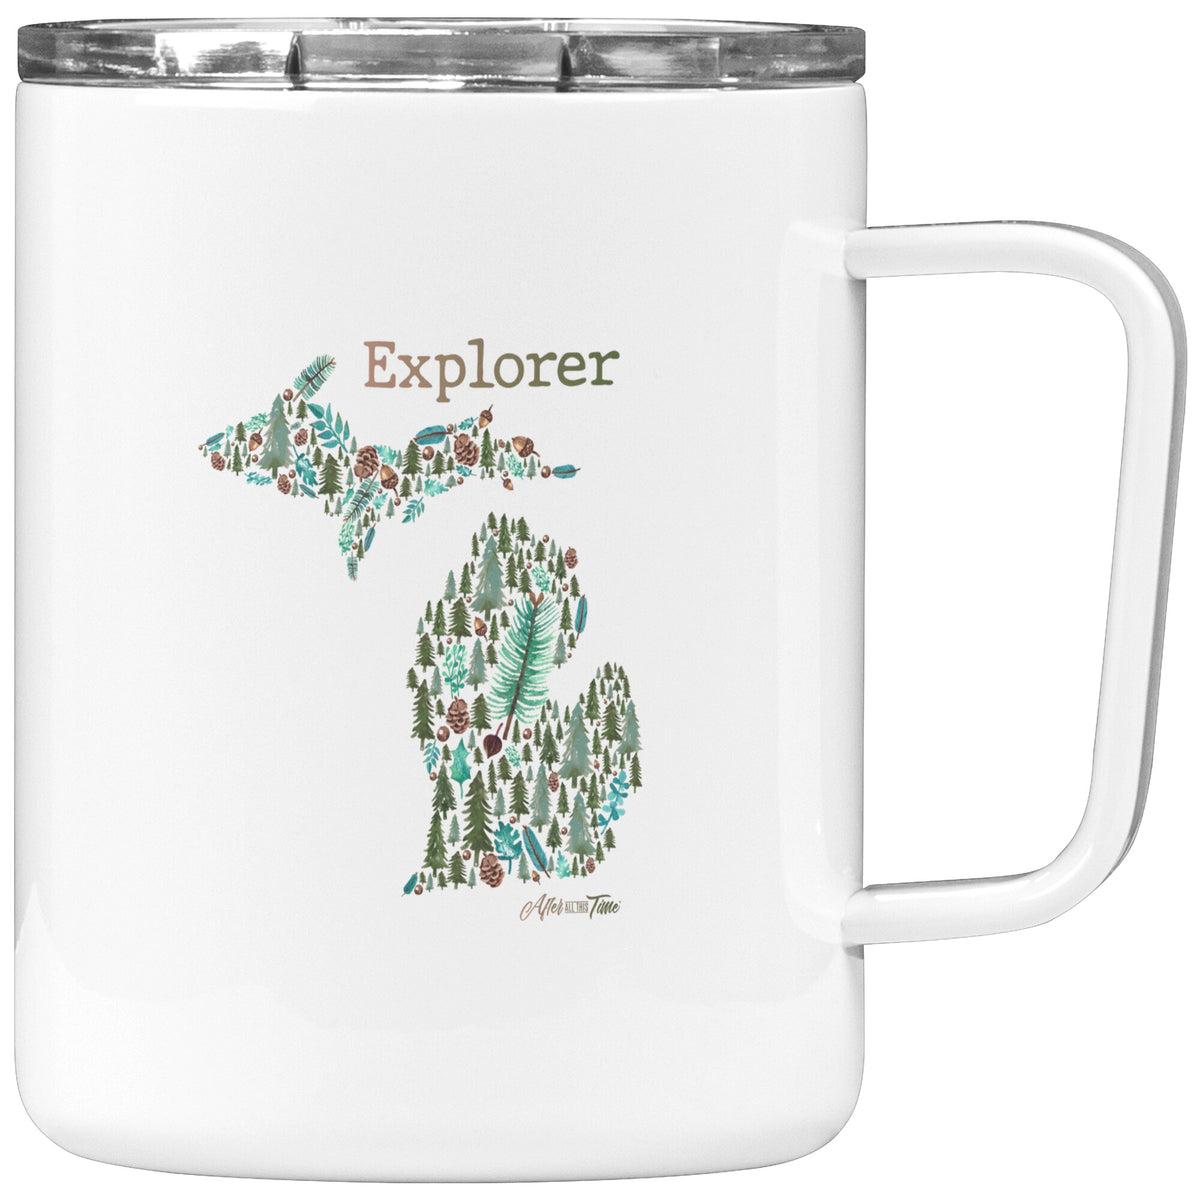 Explorer 10 oz. Insulated Coffee mug